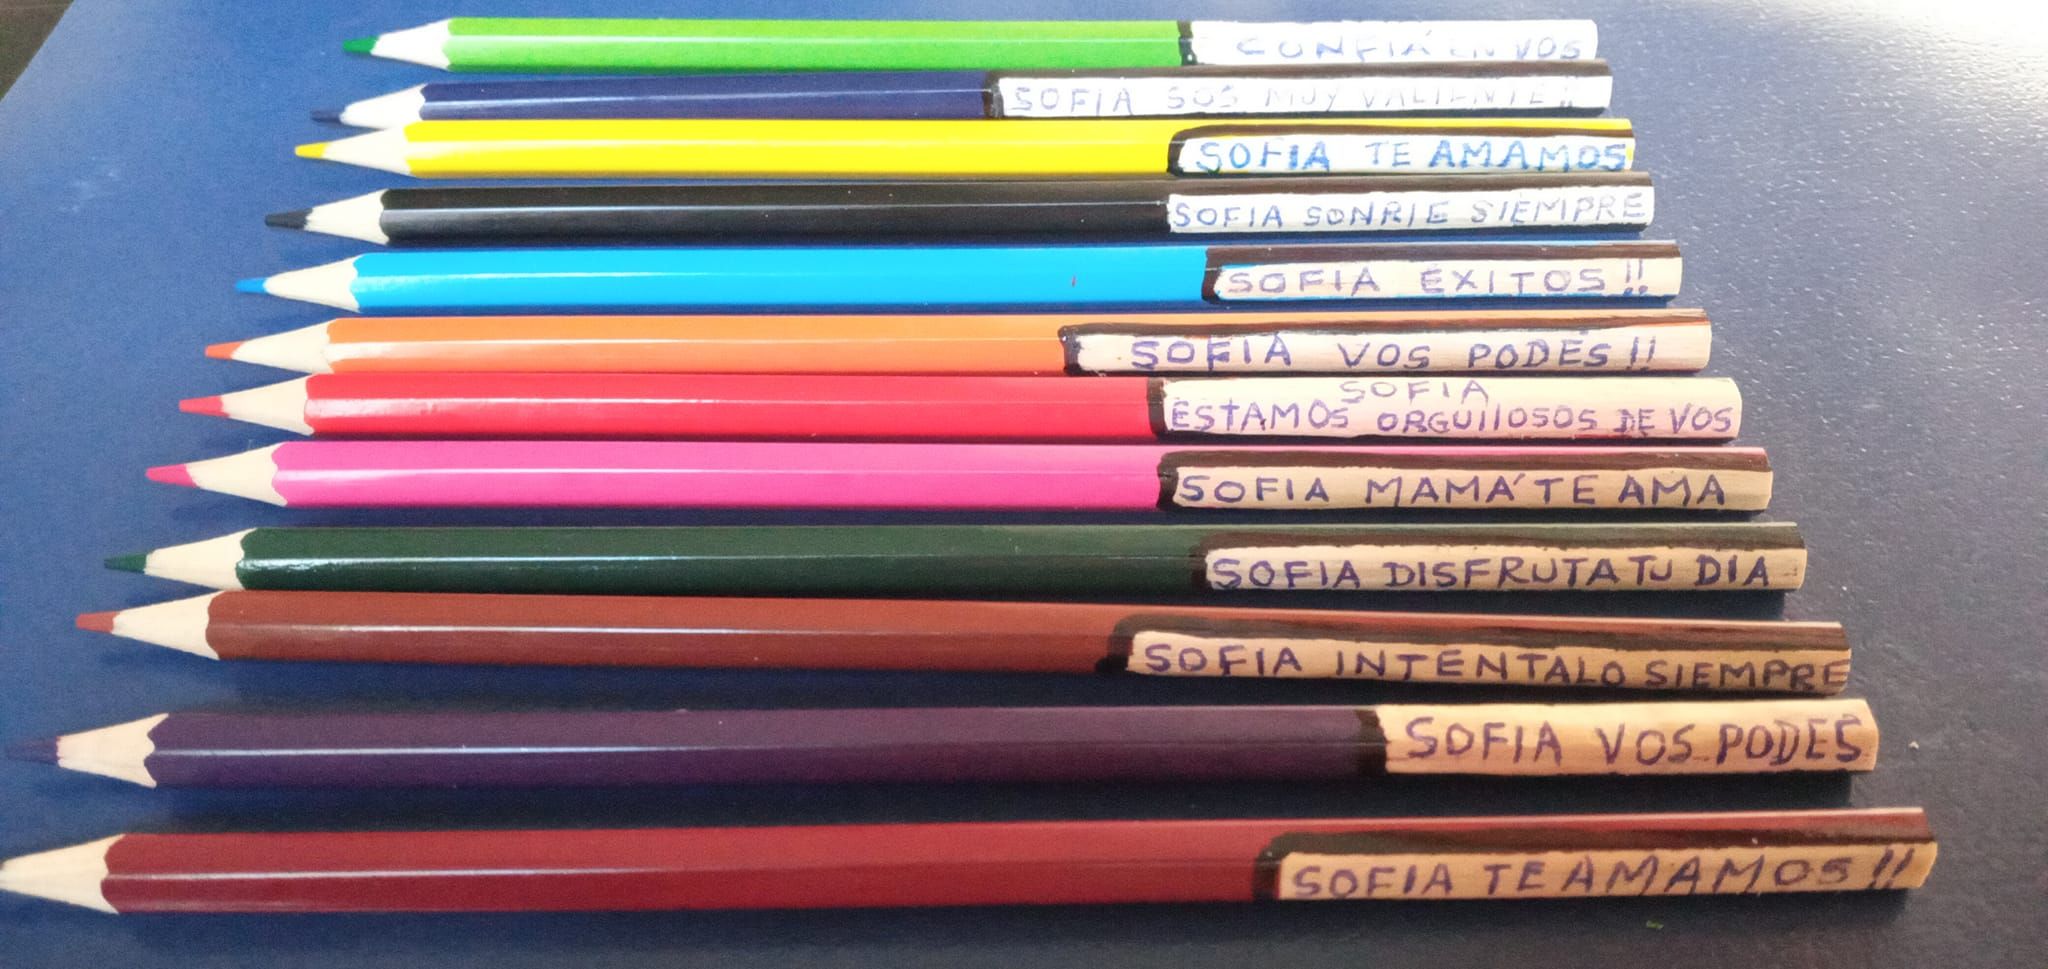 El tierno gesto con su nieta con autismo: mensajes en los lápices para 'acompañarla' en clase